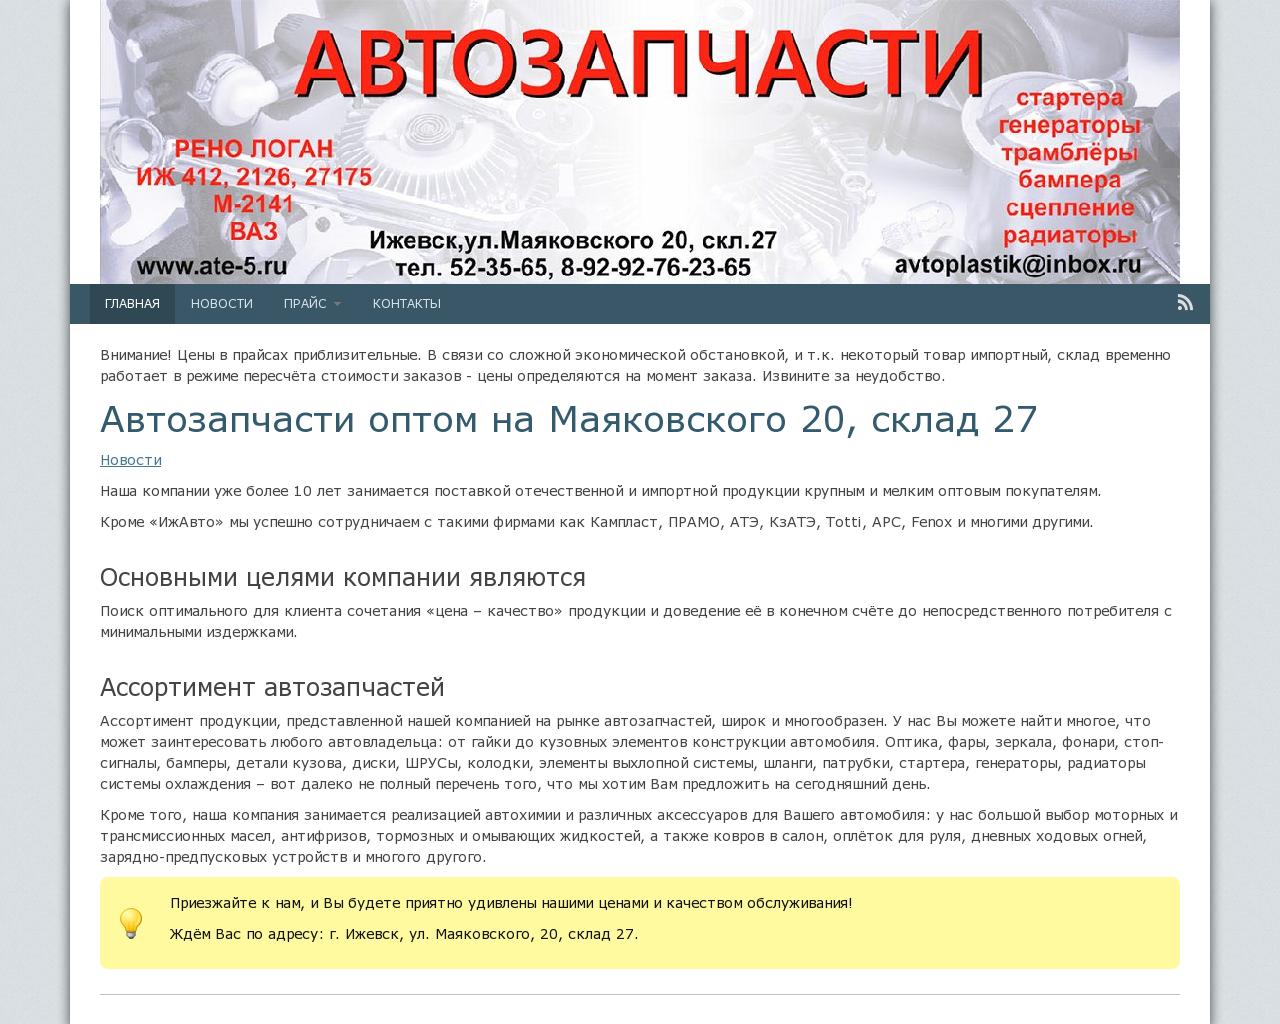 Изображение сайта ate-5.ru в разрешении 1280x1024